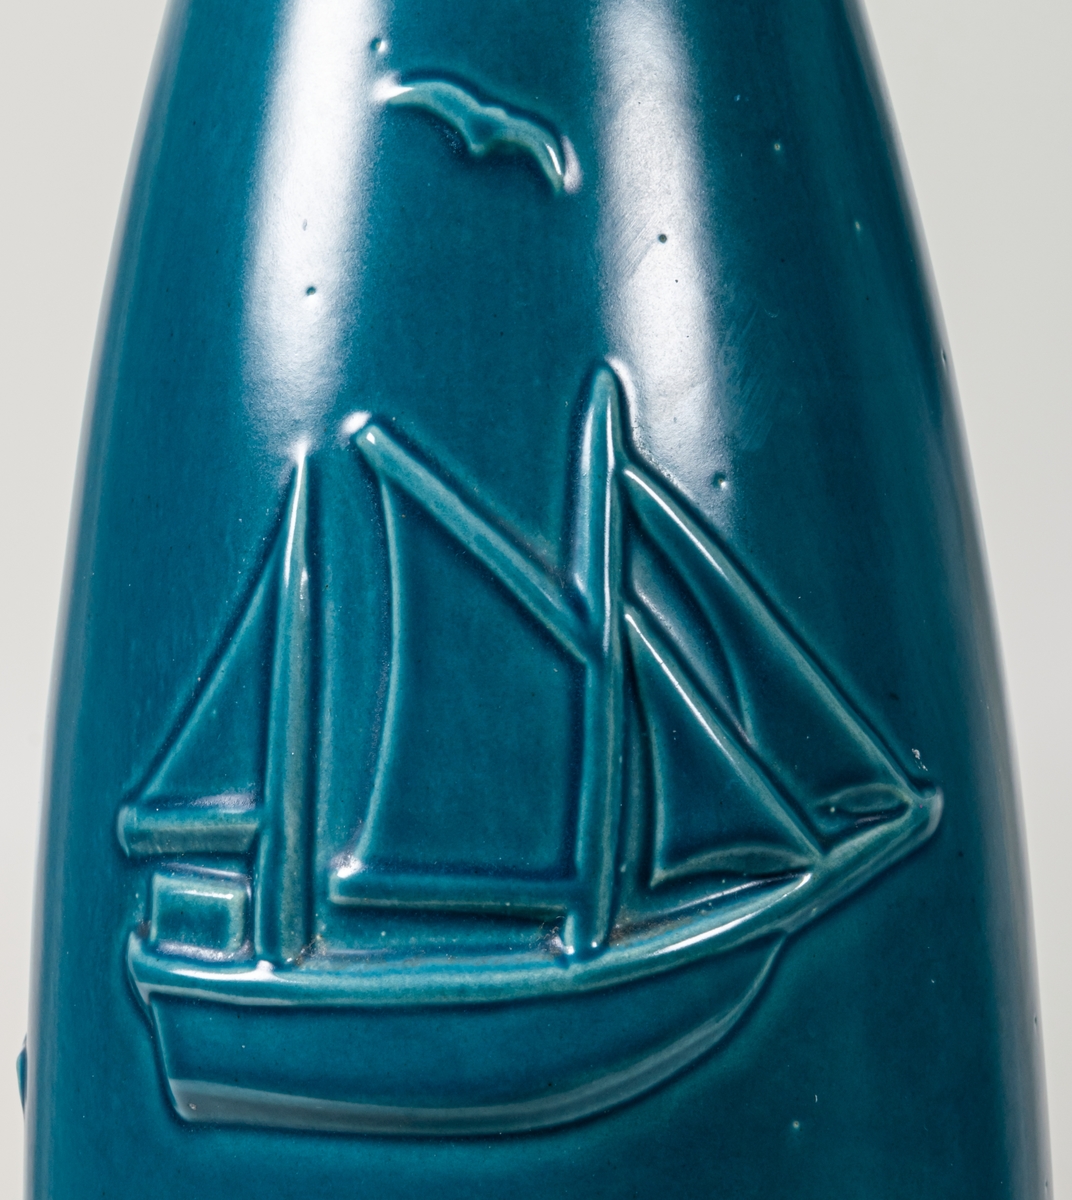 Hög, smal golvvas i keramik med havsmotiv, blåturkos glasyr utvändigt, svart glasyr invändigt. Mindre prickar i glasyren.